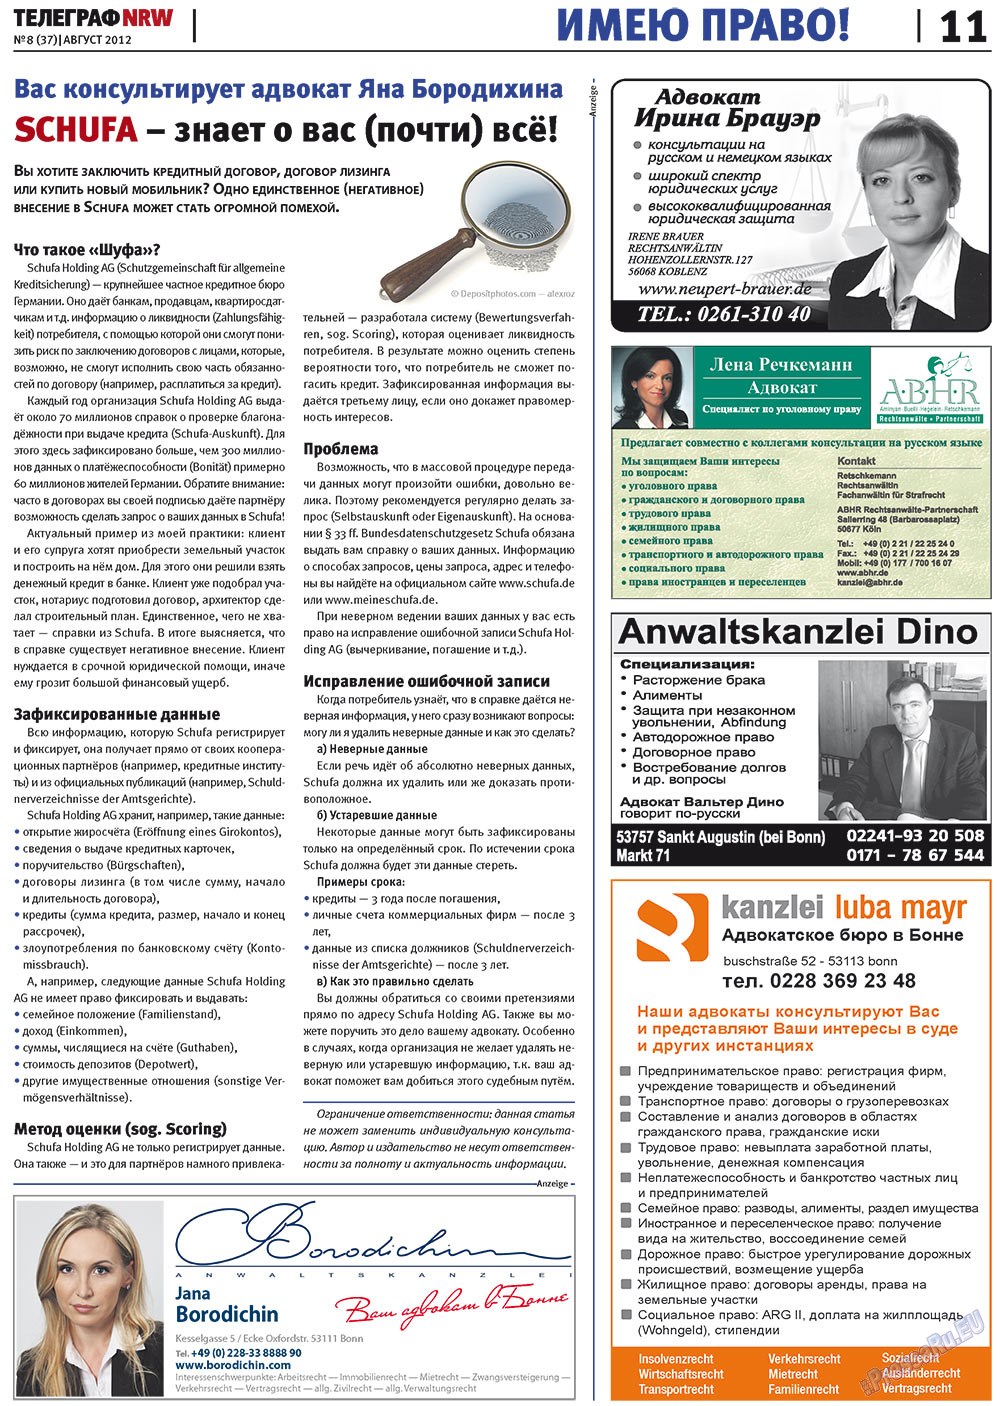 Телеграф NRW (газета). 2012 год, номер 8, стр. 11